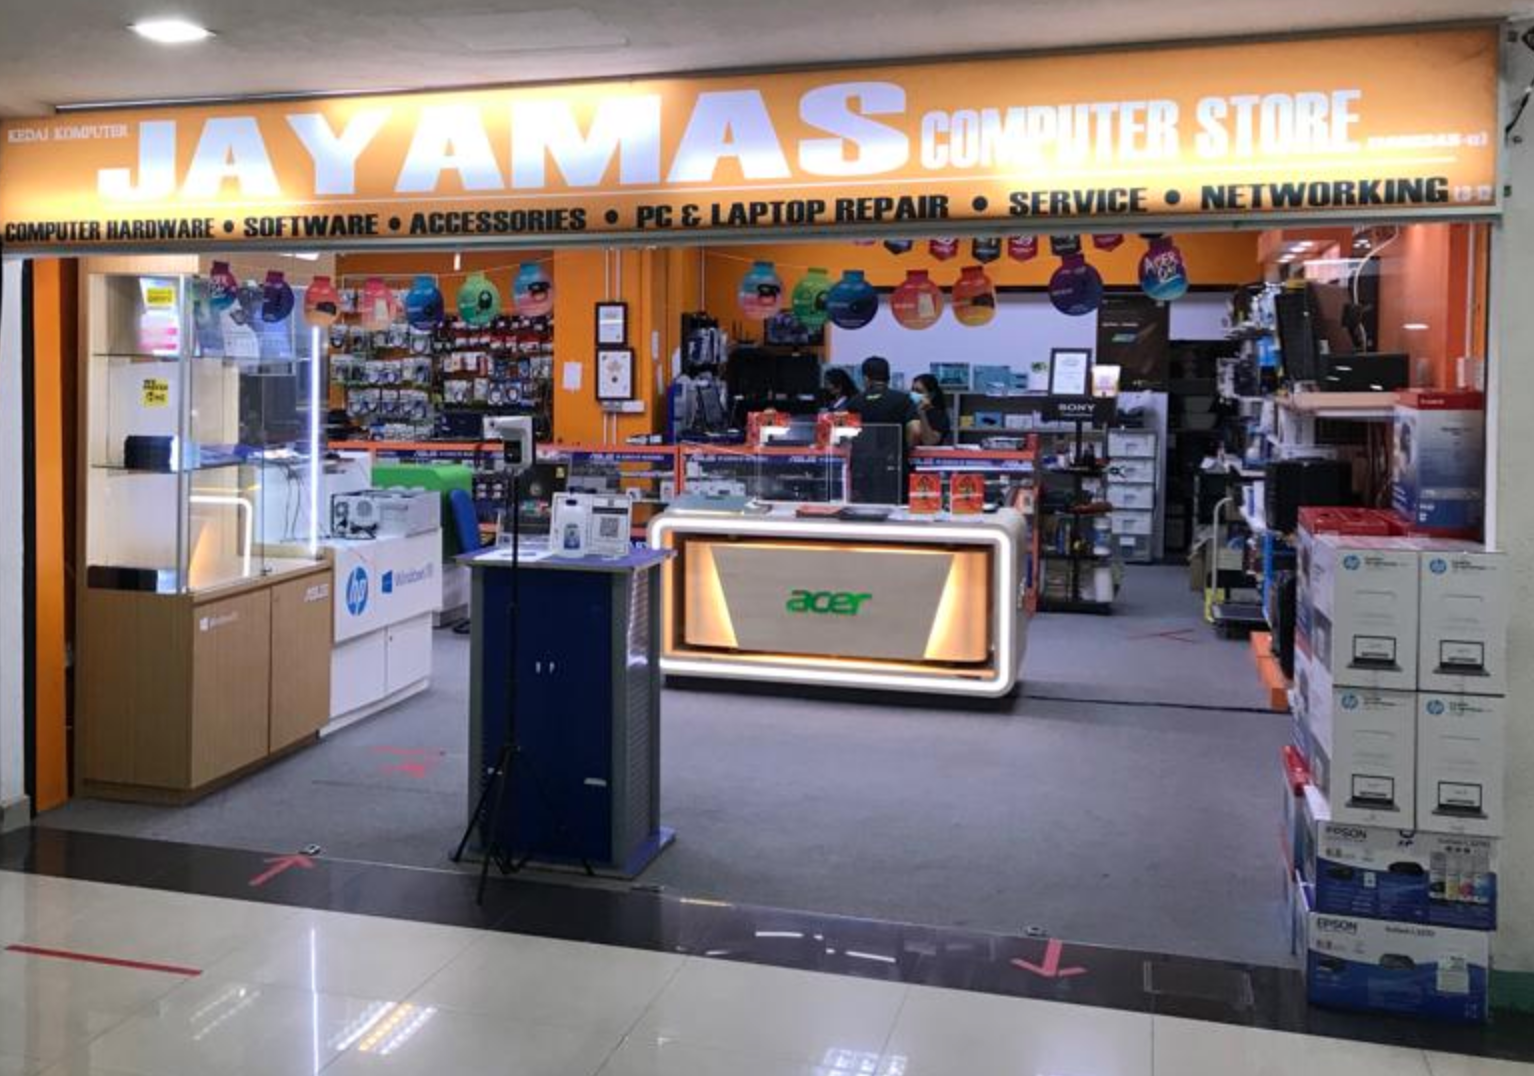 Jayamas Computer Store